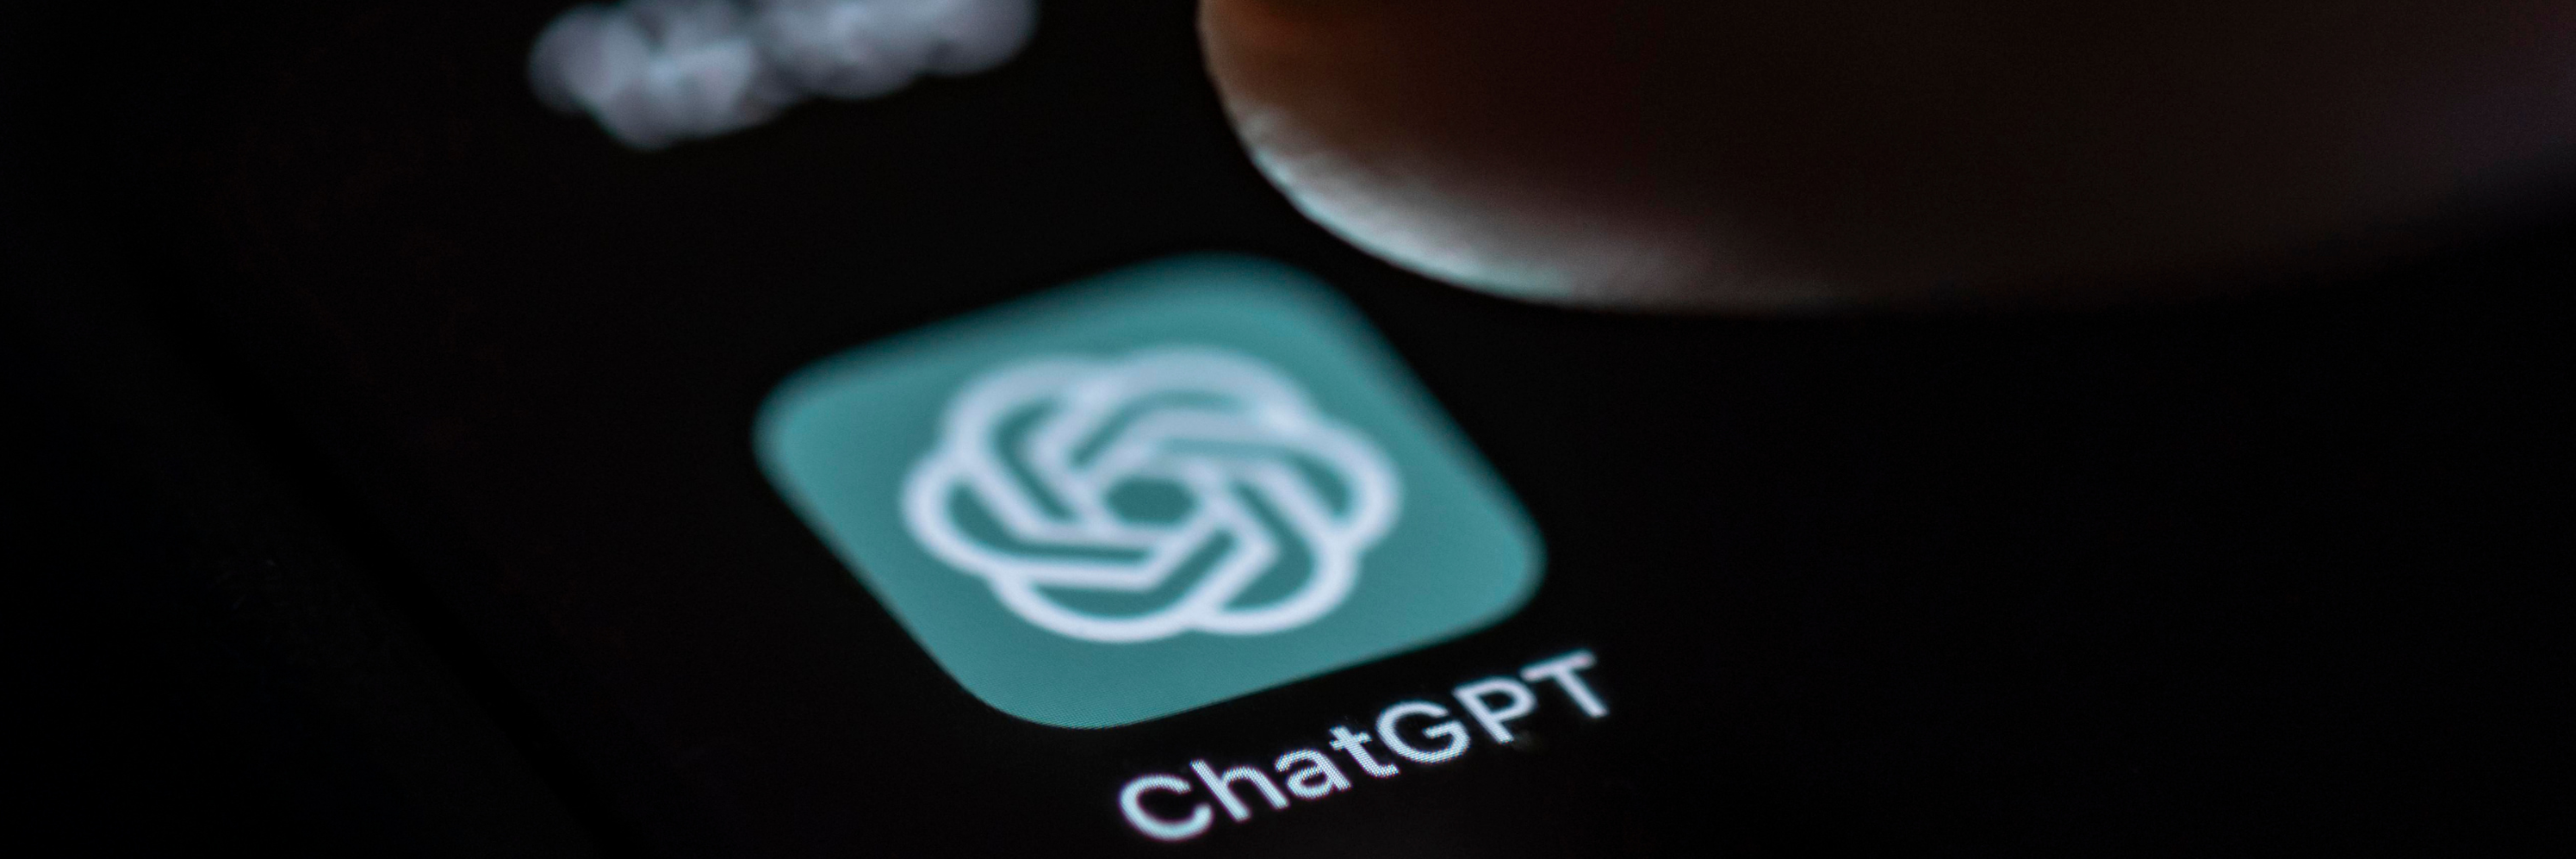 Smartphone-Screen mit der App Chat GPT